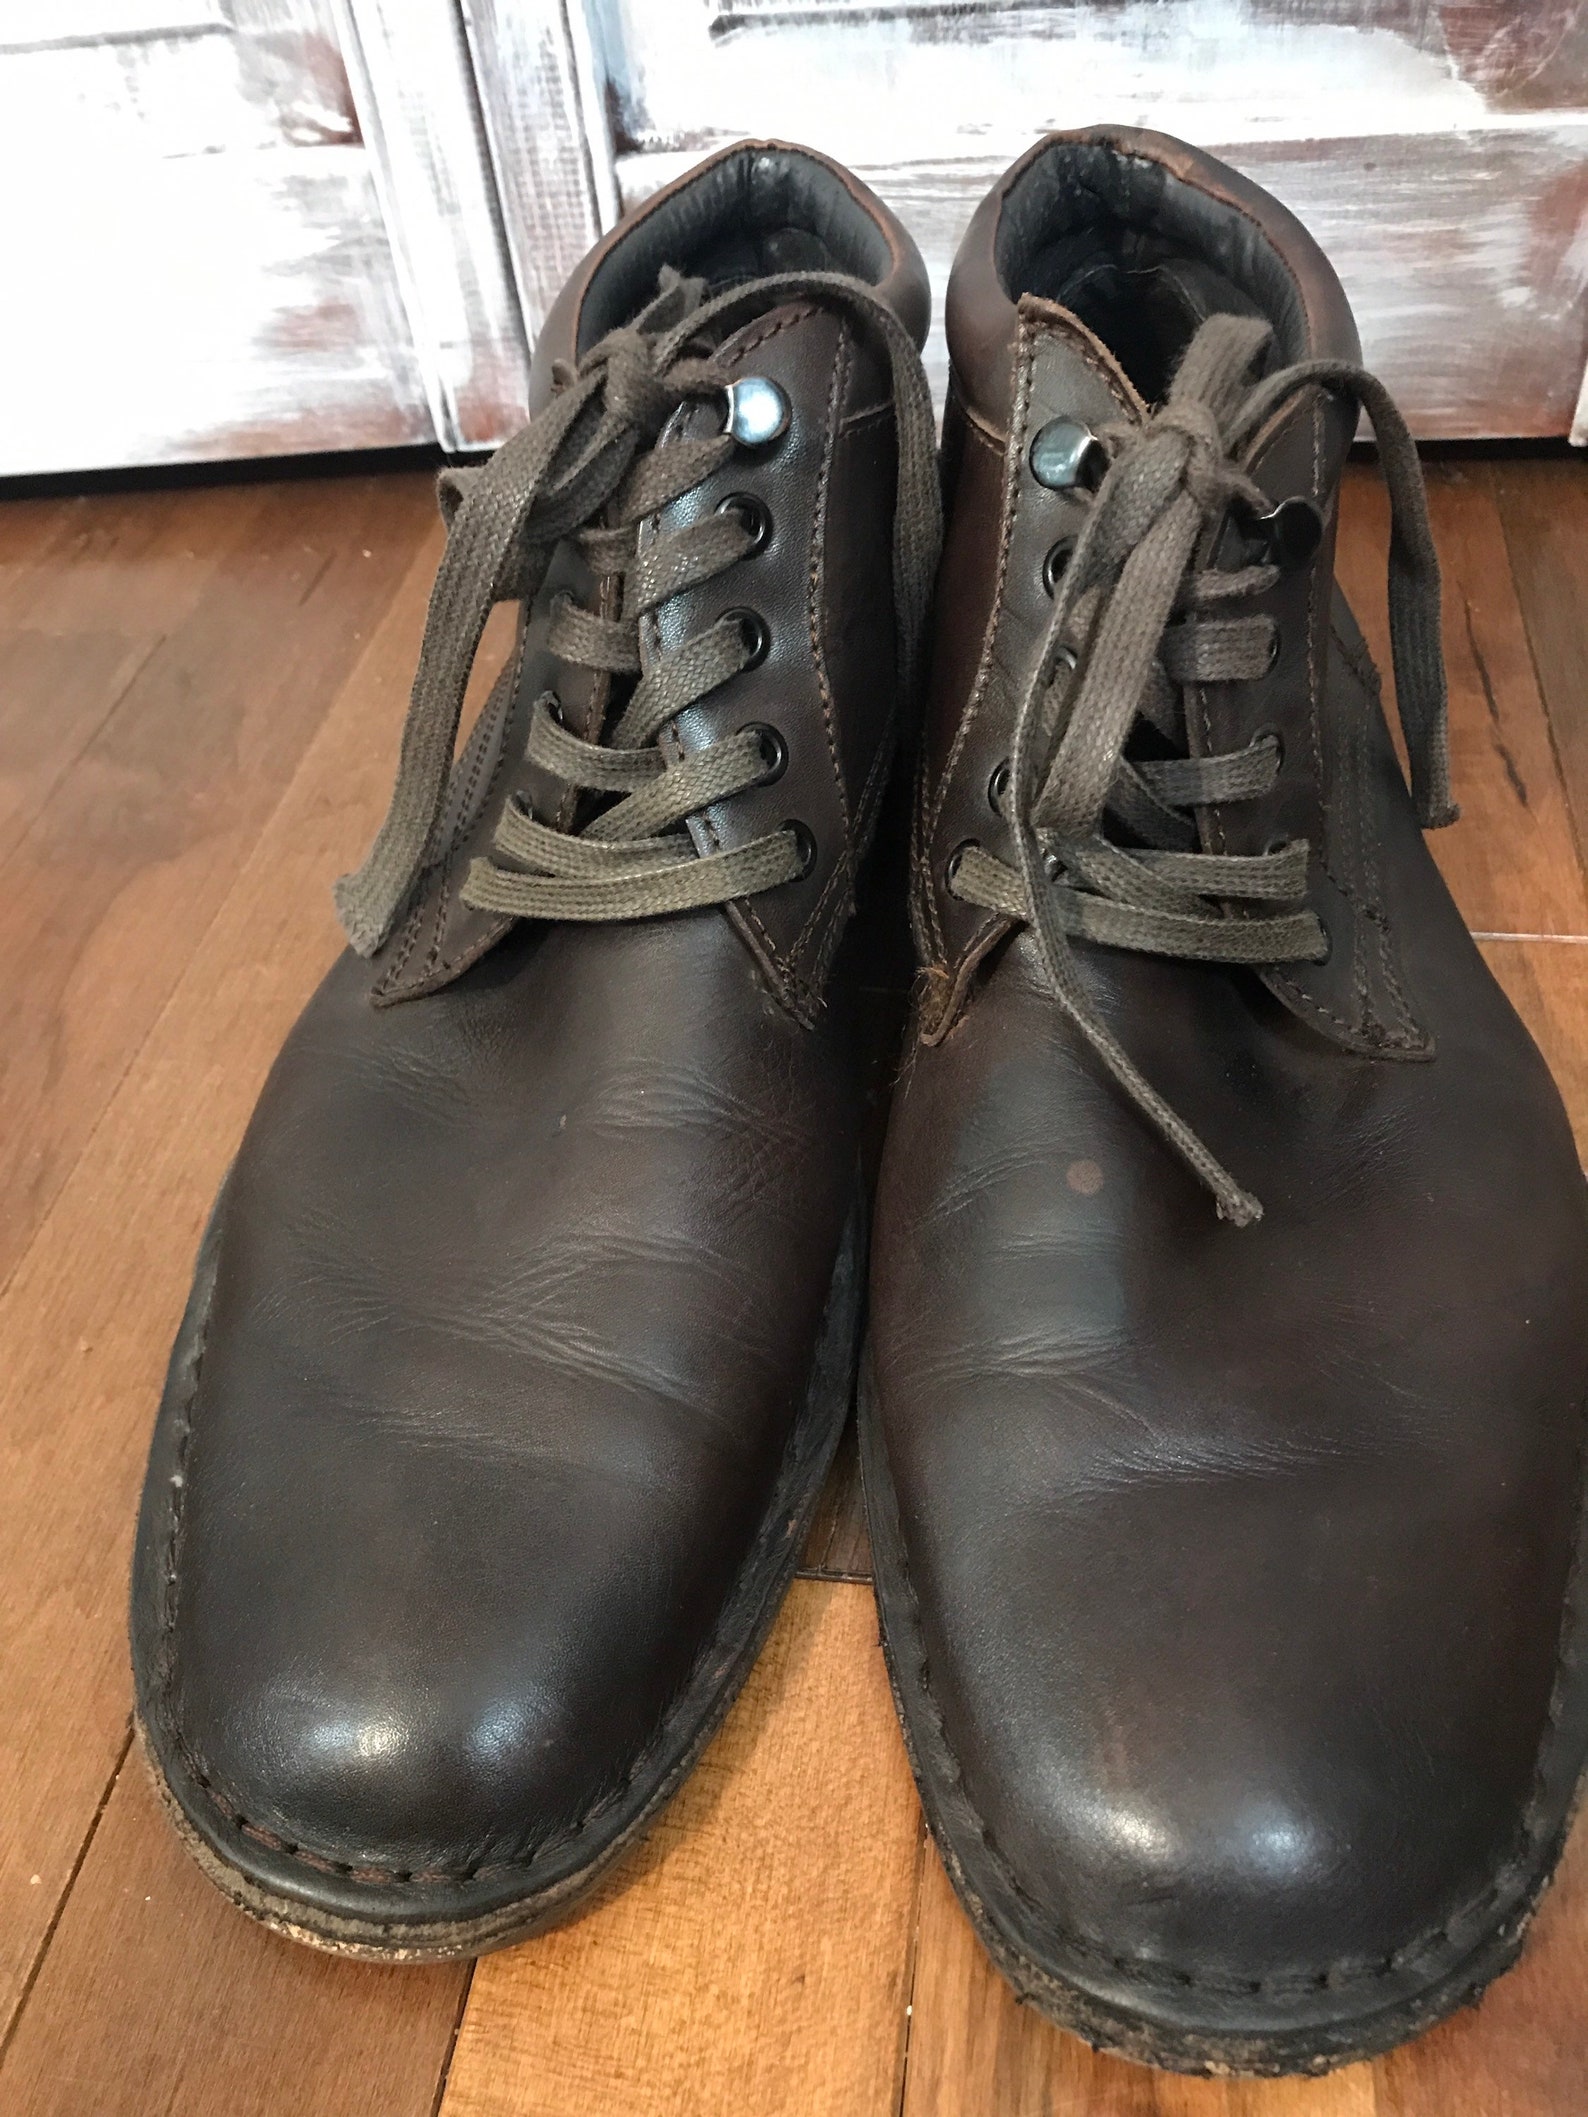 Vintage men's shoe Rudsak shoe in brown brown leather | Etsy